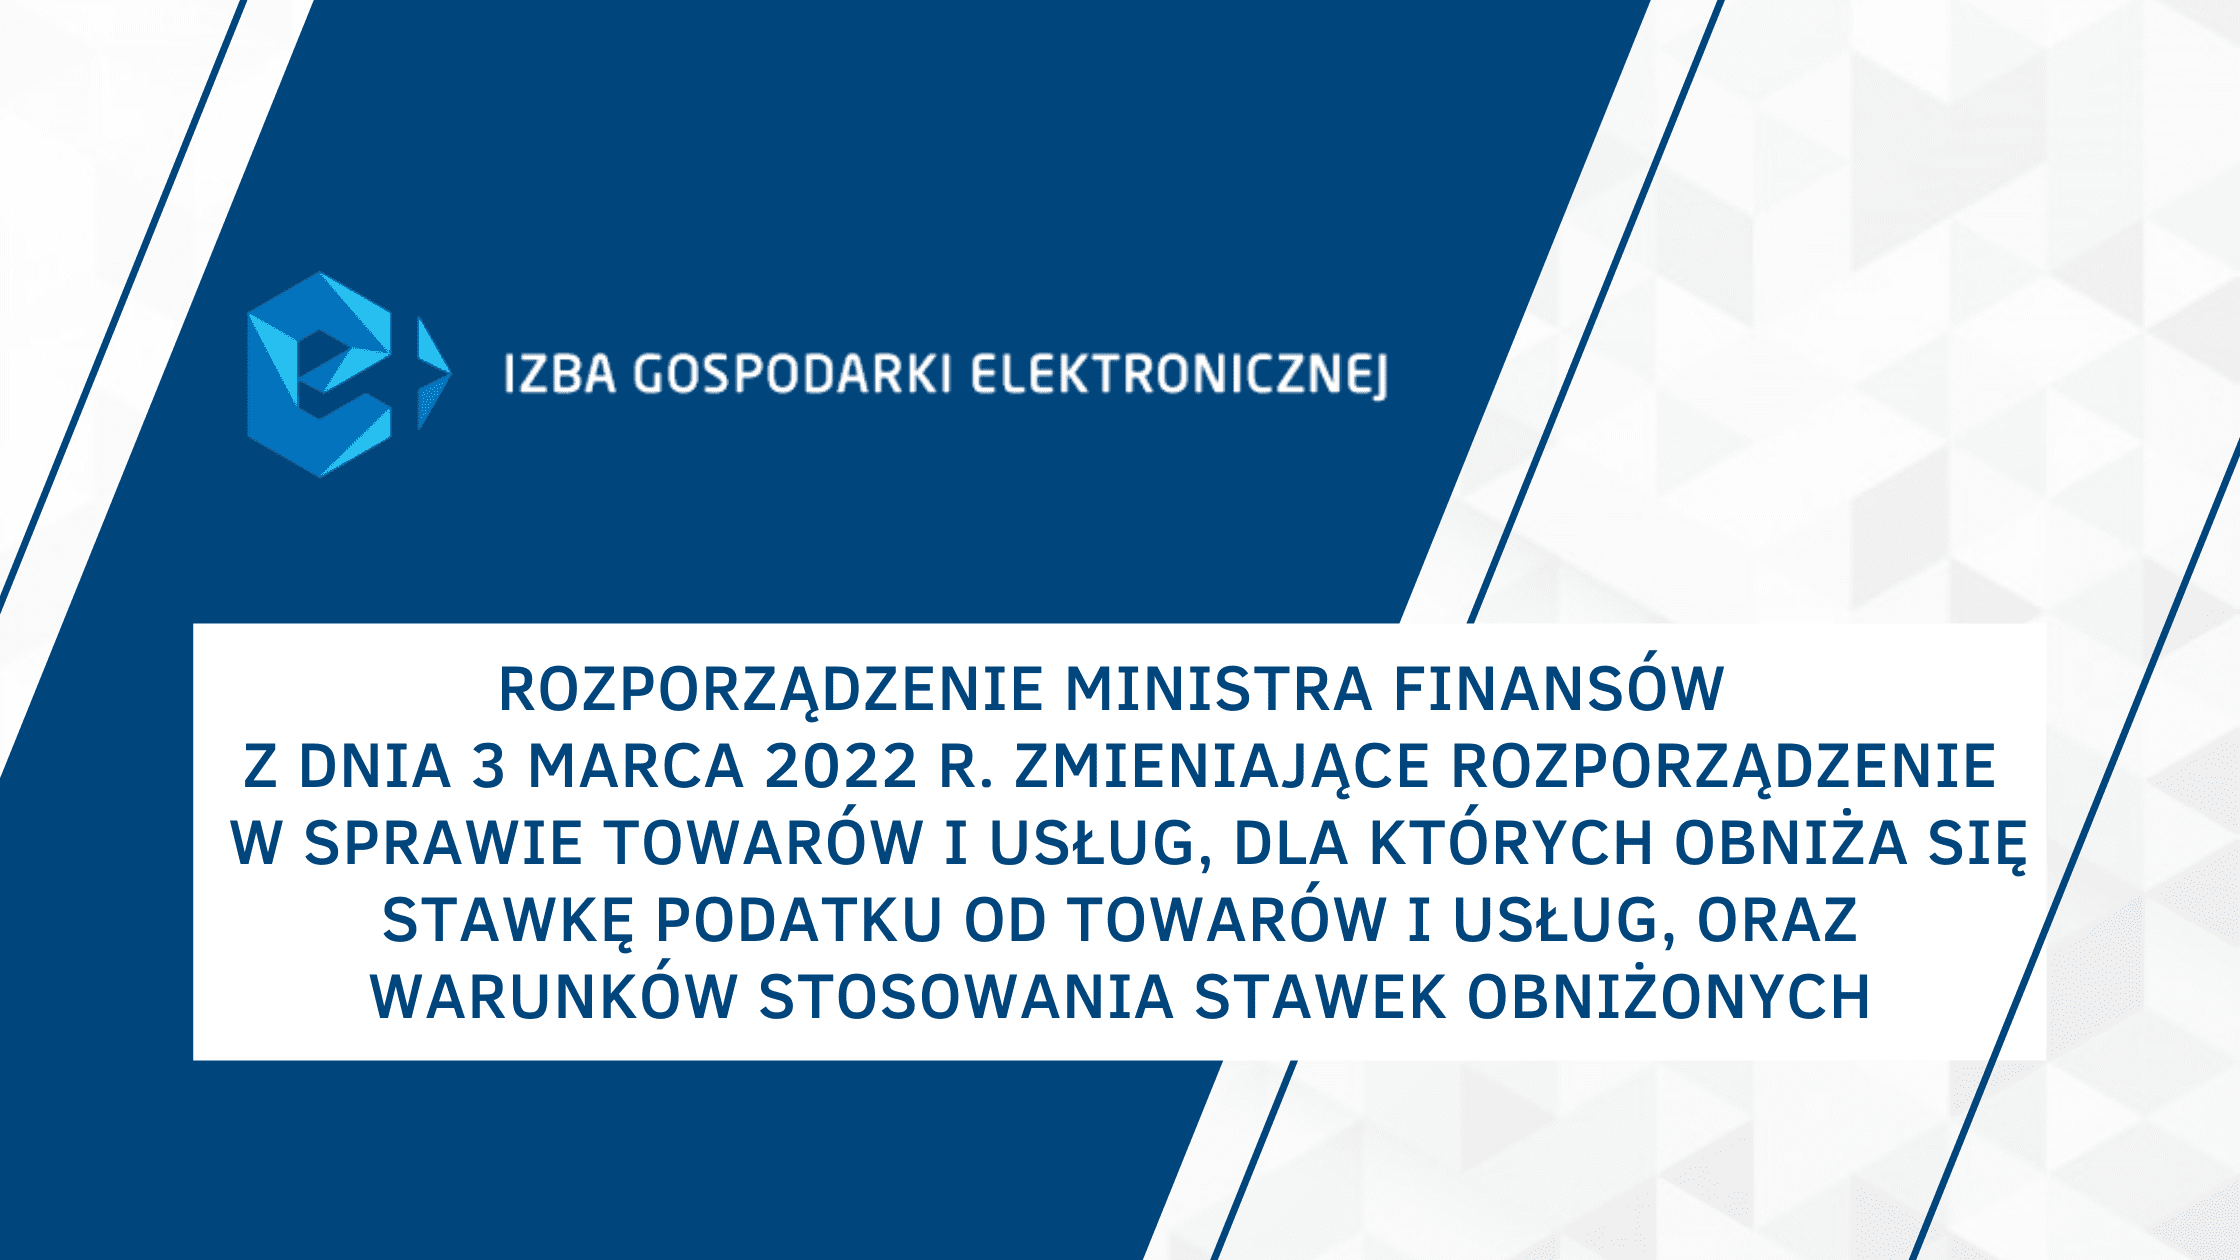 Rozporządzenie Ministra Finansów z dnia 3 marca 2022 r. zmieniające rozporządzenie w sprawie towarów i usług